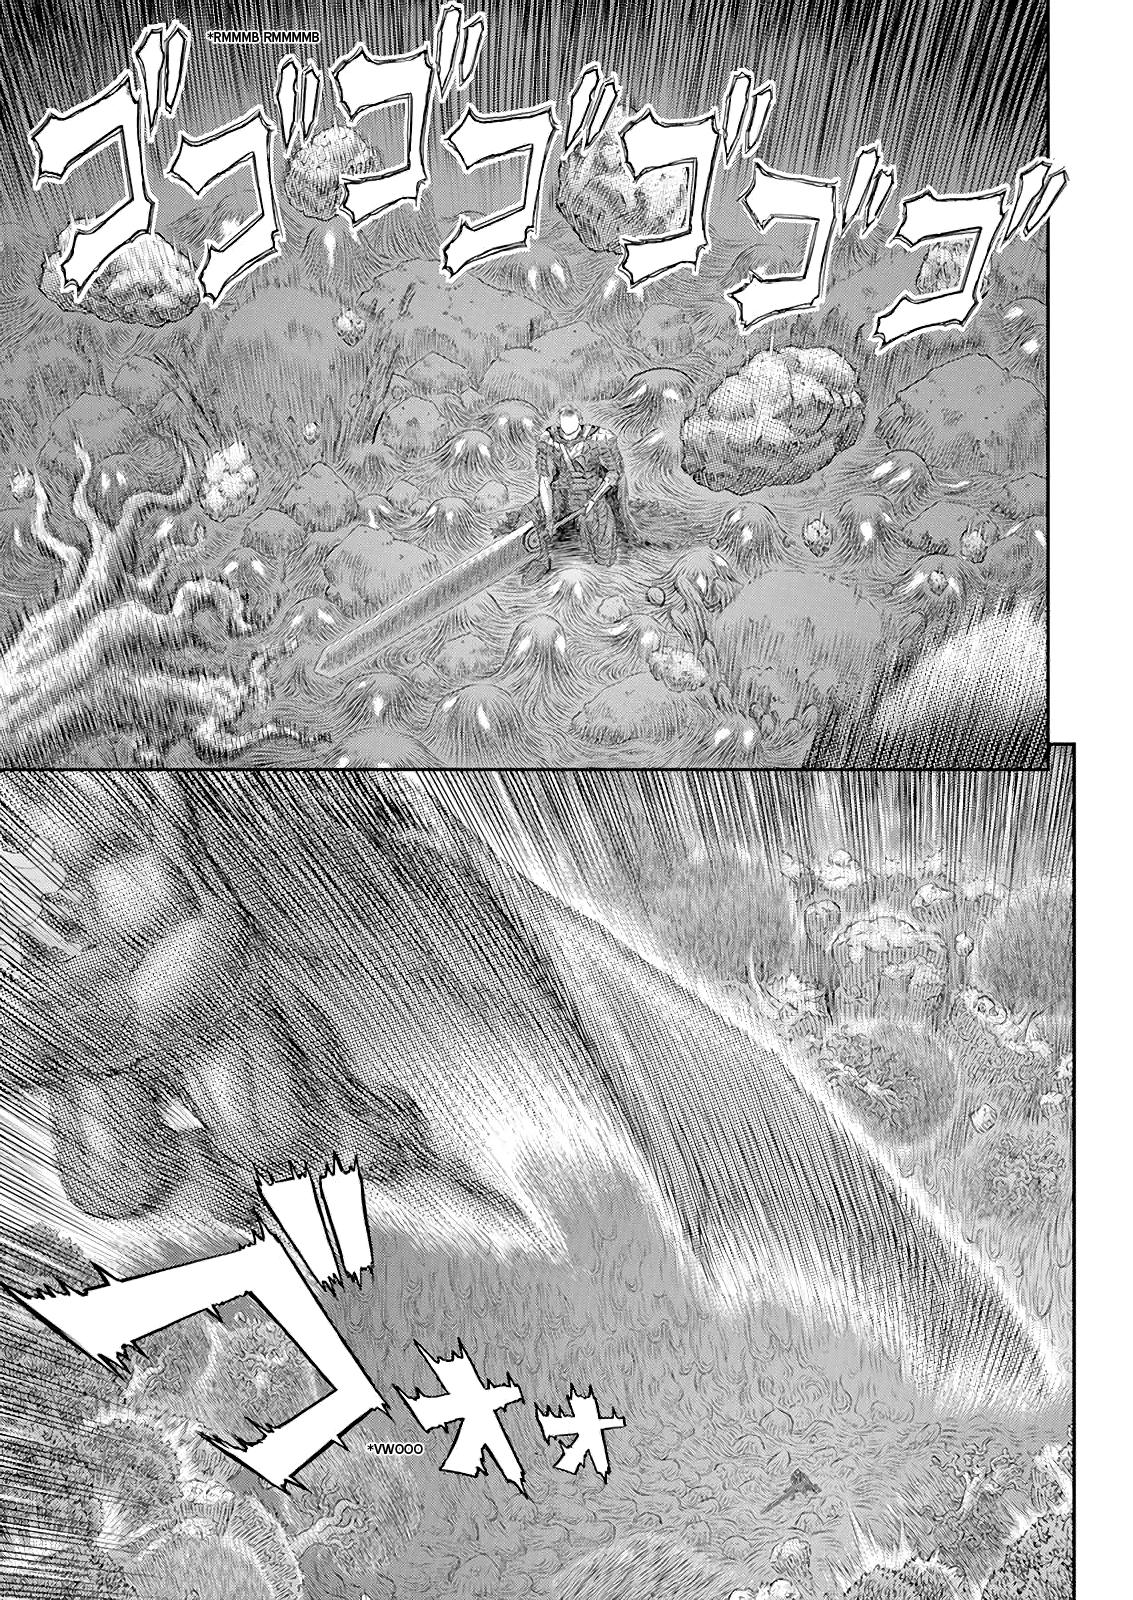 Berserk Manga Chapter 368 image 14